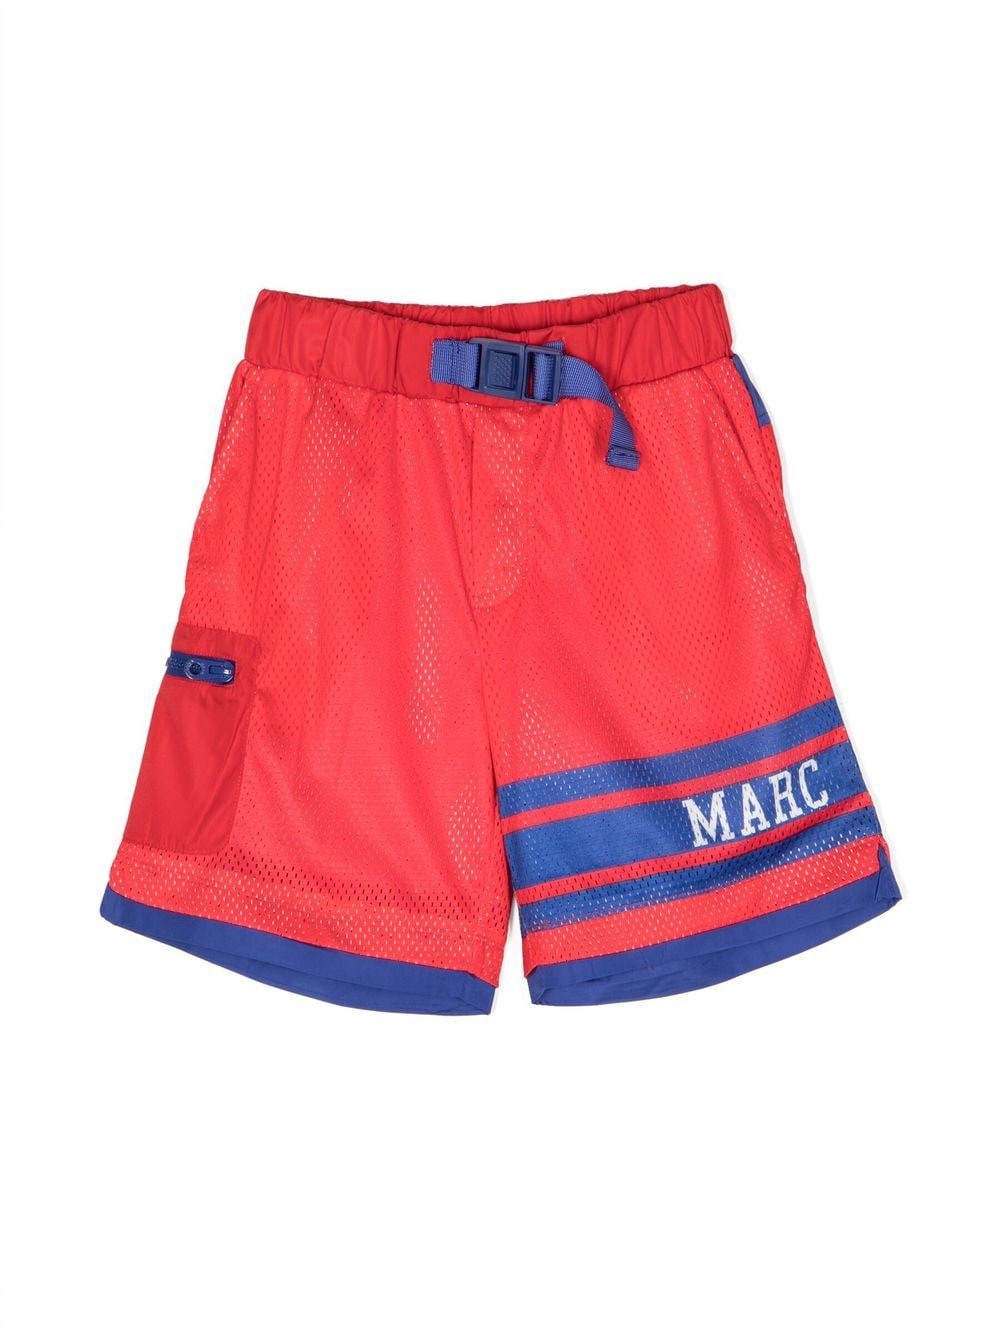 Marc Jacobs Teen Boys Red Mesh Logo Shorts